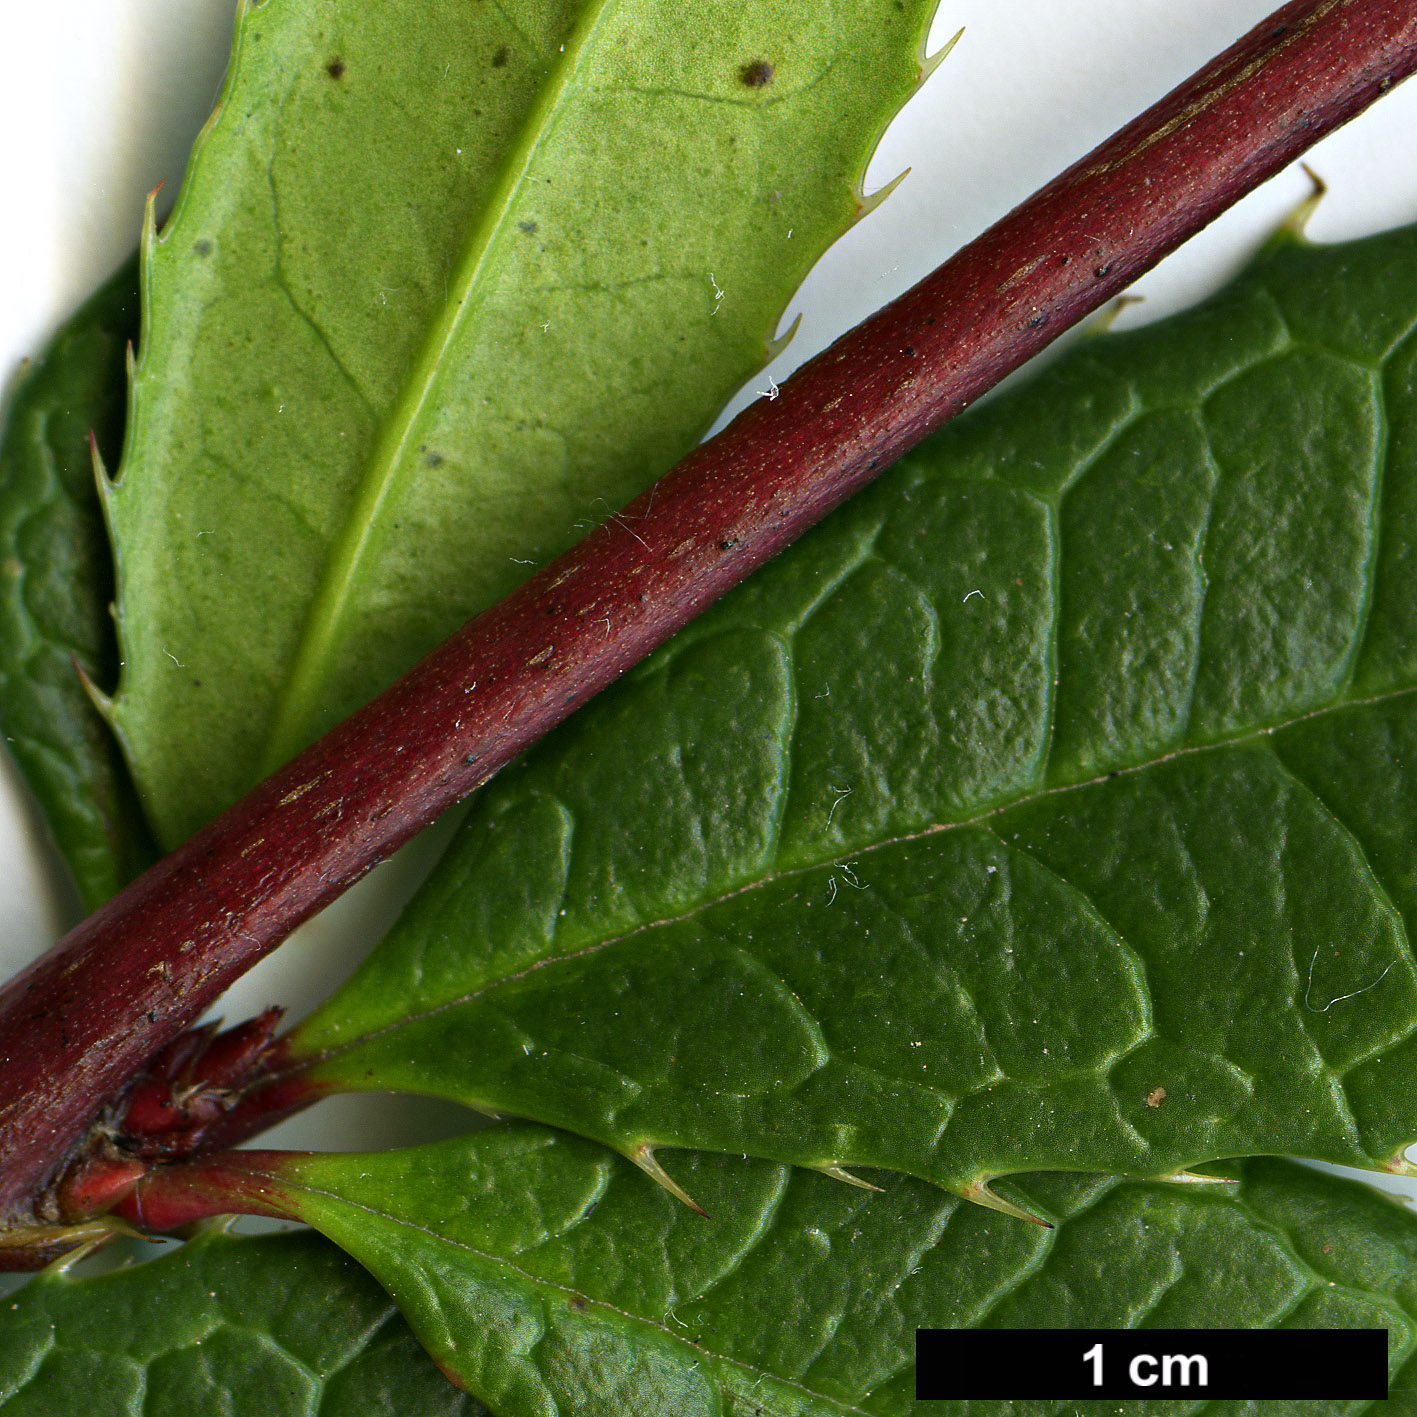 High resolution image: Family: Berberidaceae - Genus: Berberis - Taxon: sargentiana